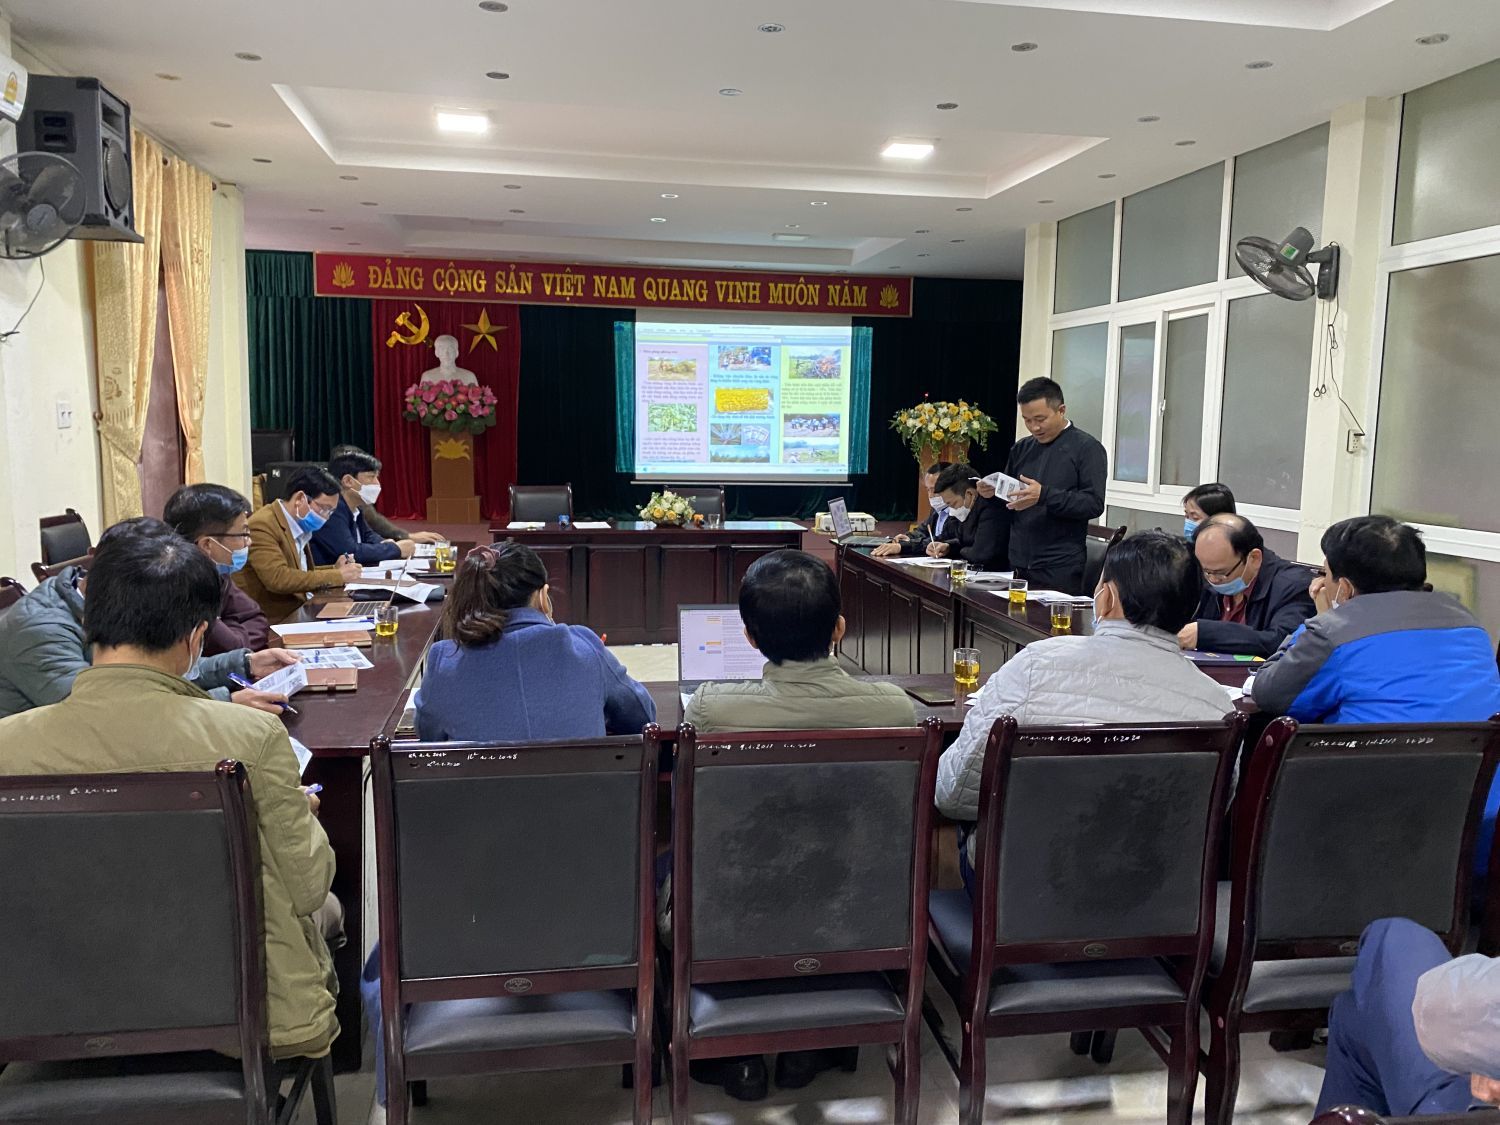 Trung tâm Khuyến nông Nghệ An tổ chức Hội thảo xin ý kiến góp ý tờ gấp phòng trừ bệnh vi rút khảm lá sắn